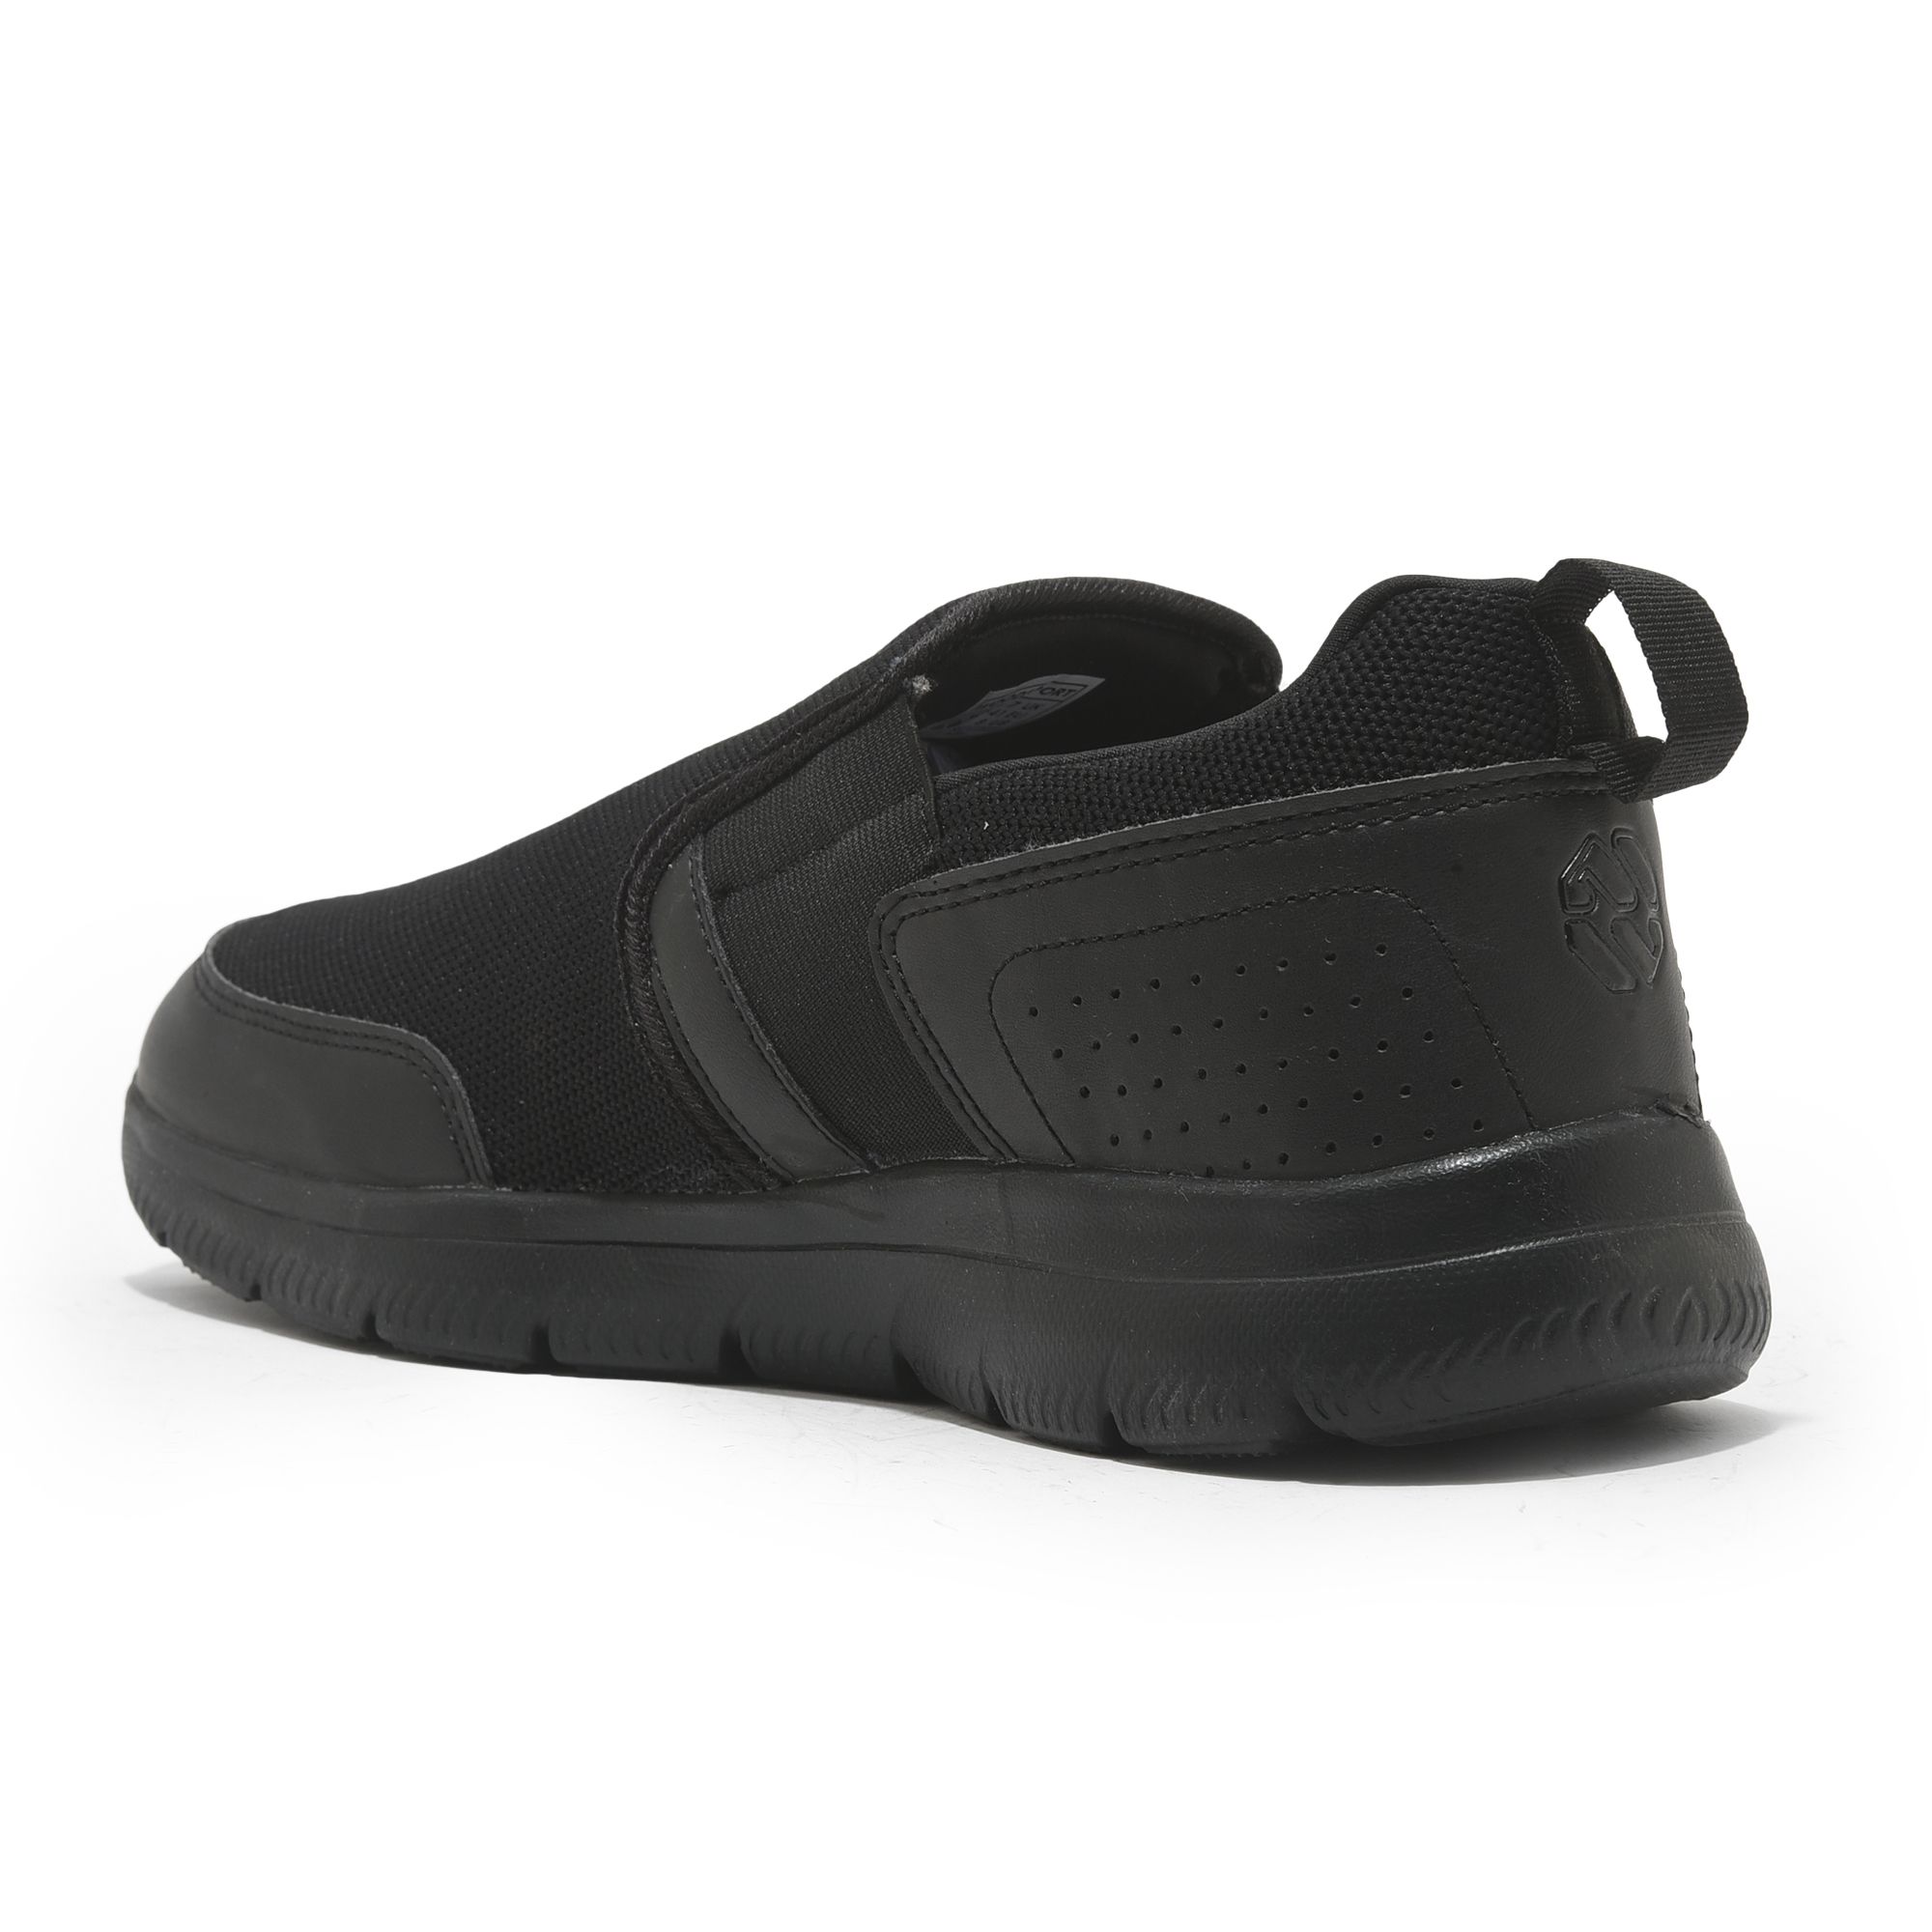 Black Slip-on Shoe for men